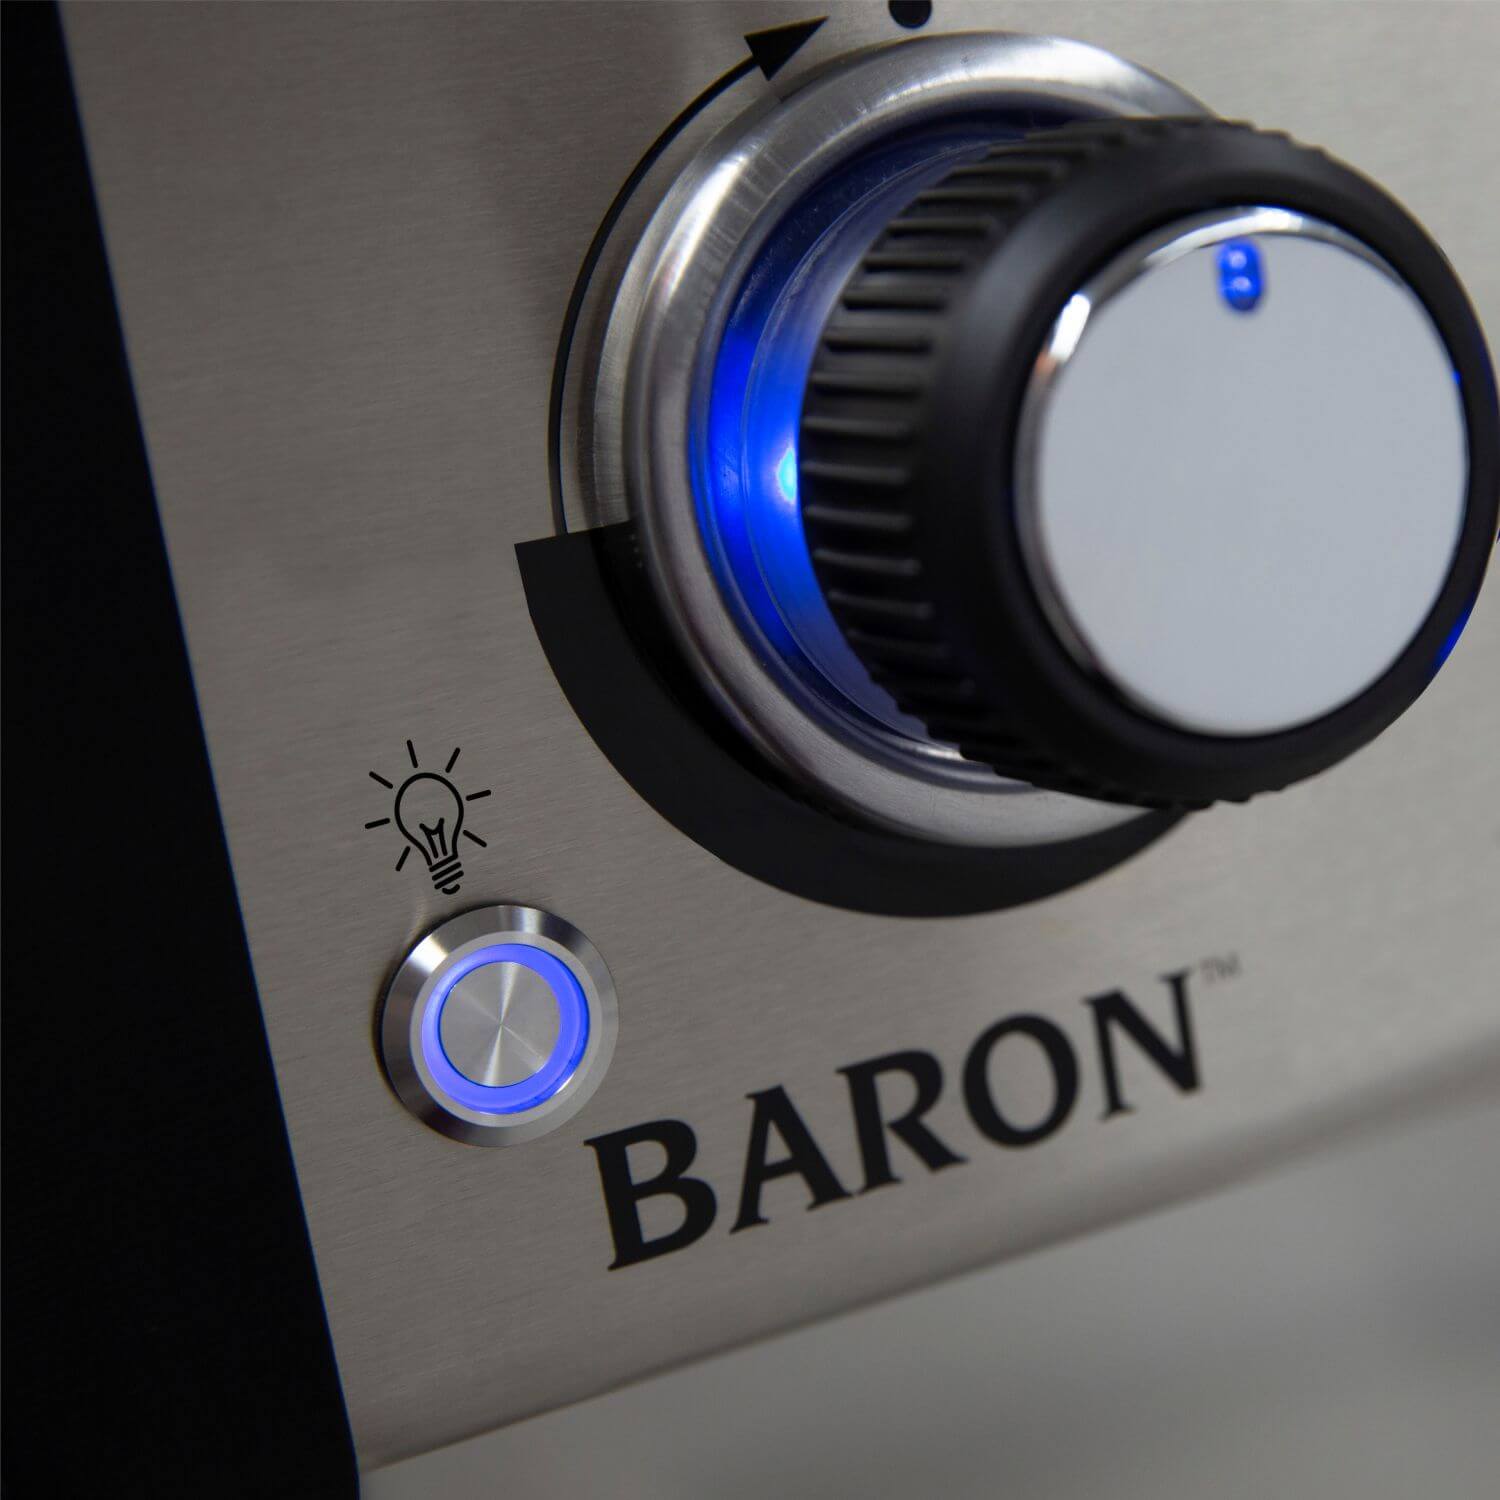 BARON S490-fvtizomenoi diakoptes